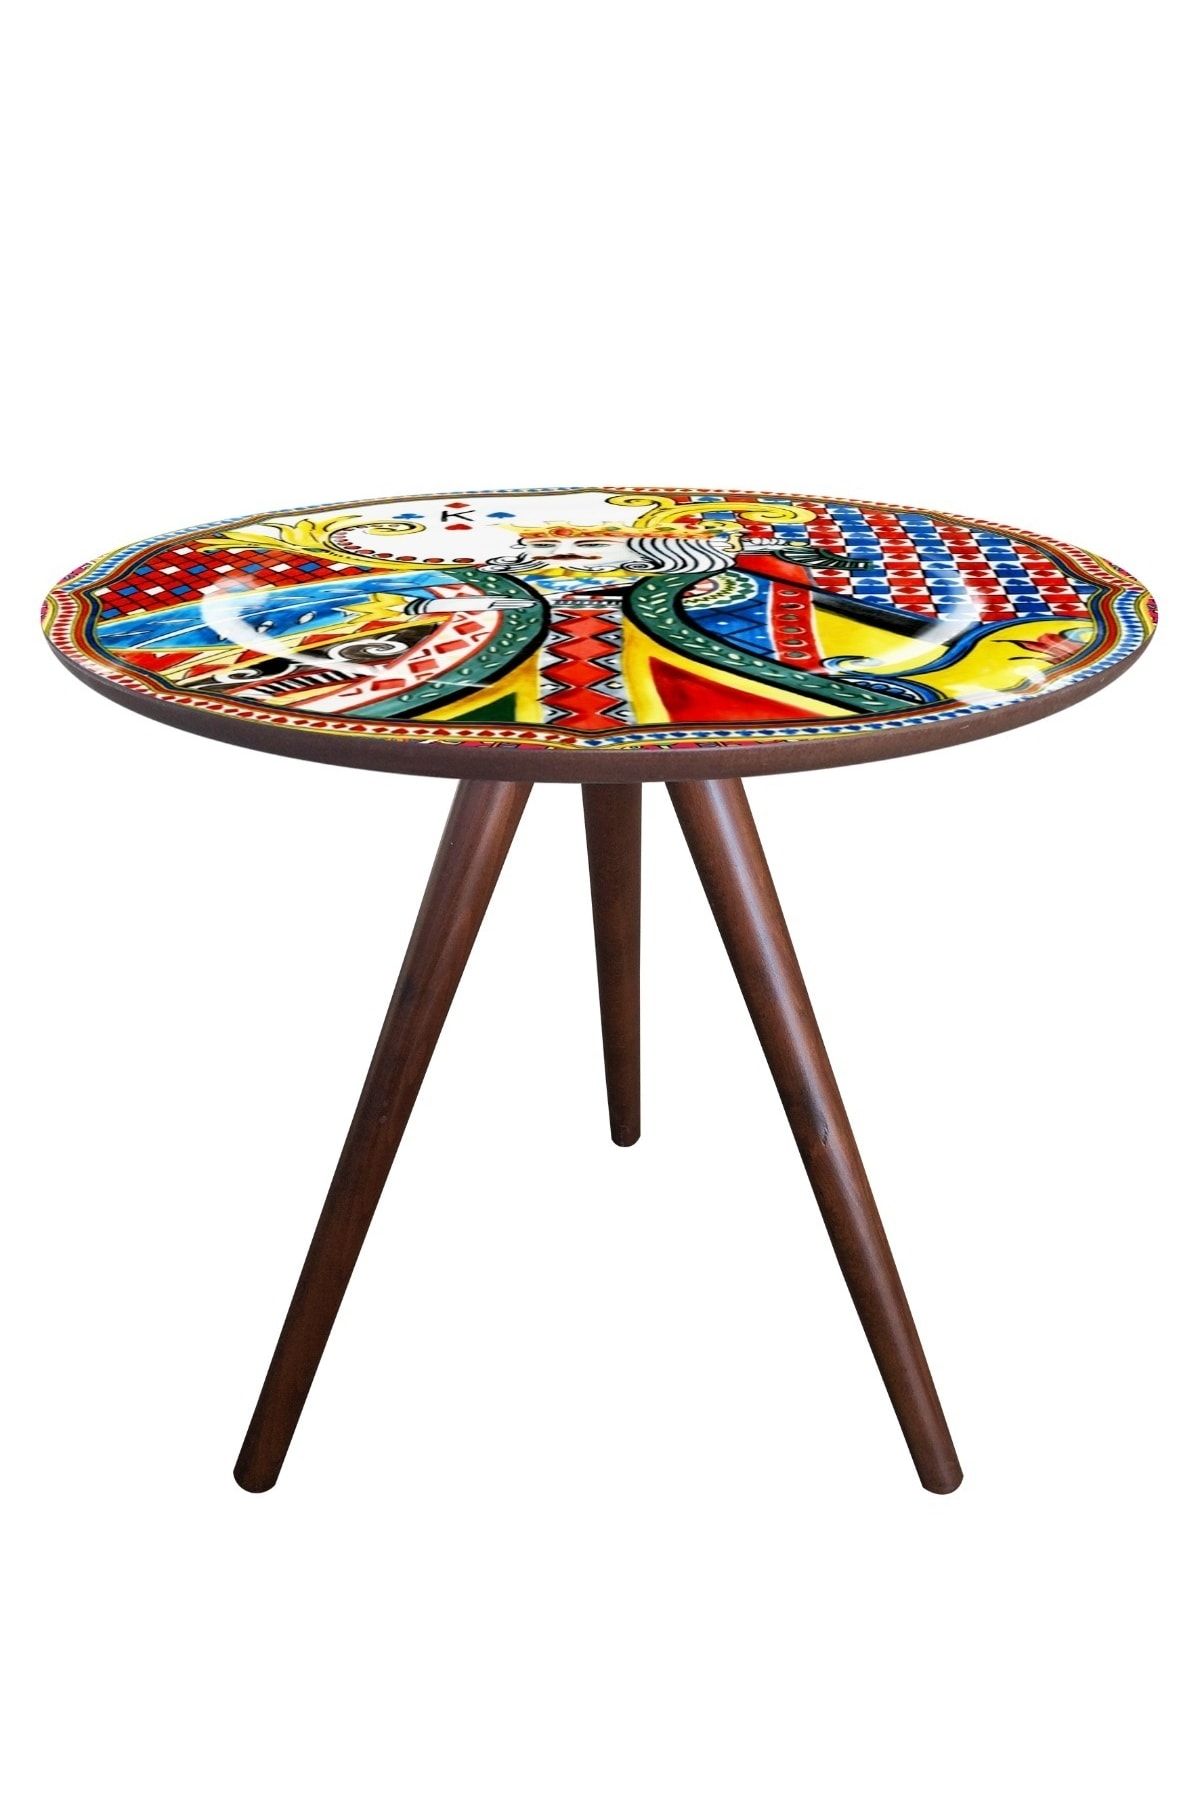 Resmet Fiskos Sehpa Coffee Table 60x57cm